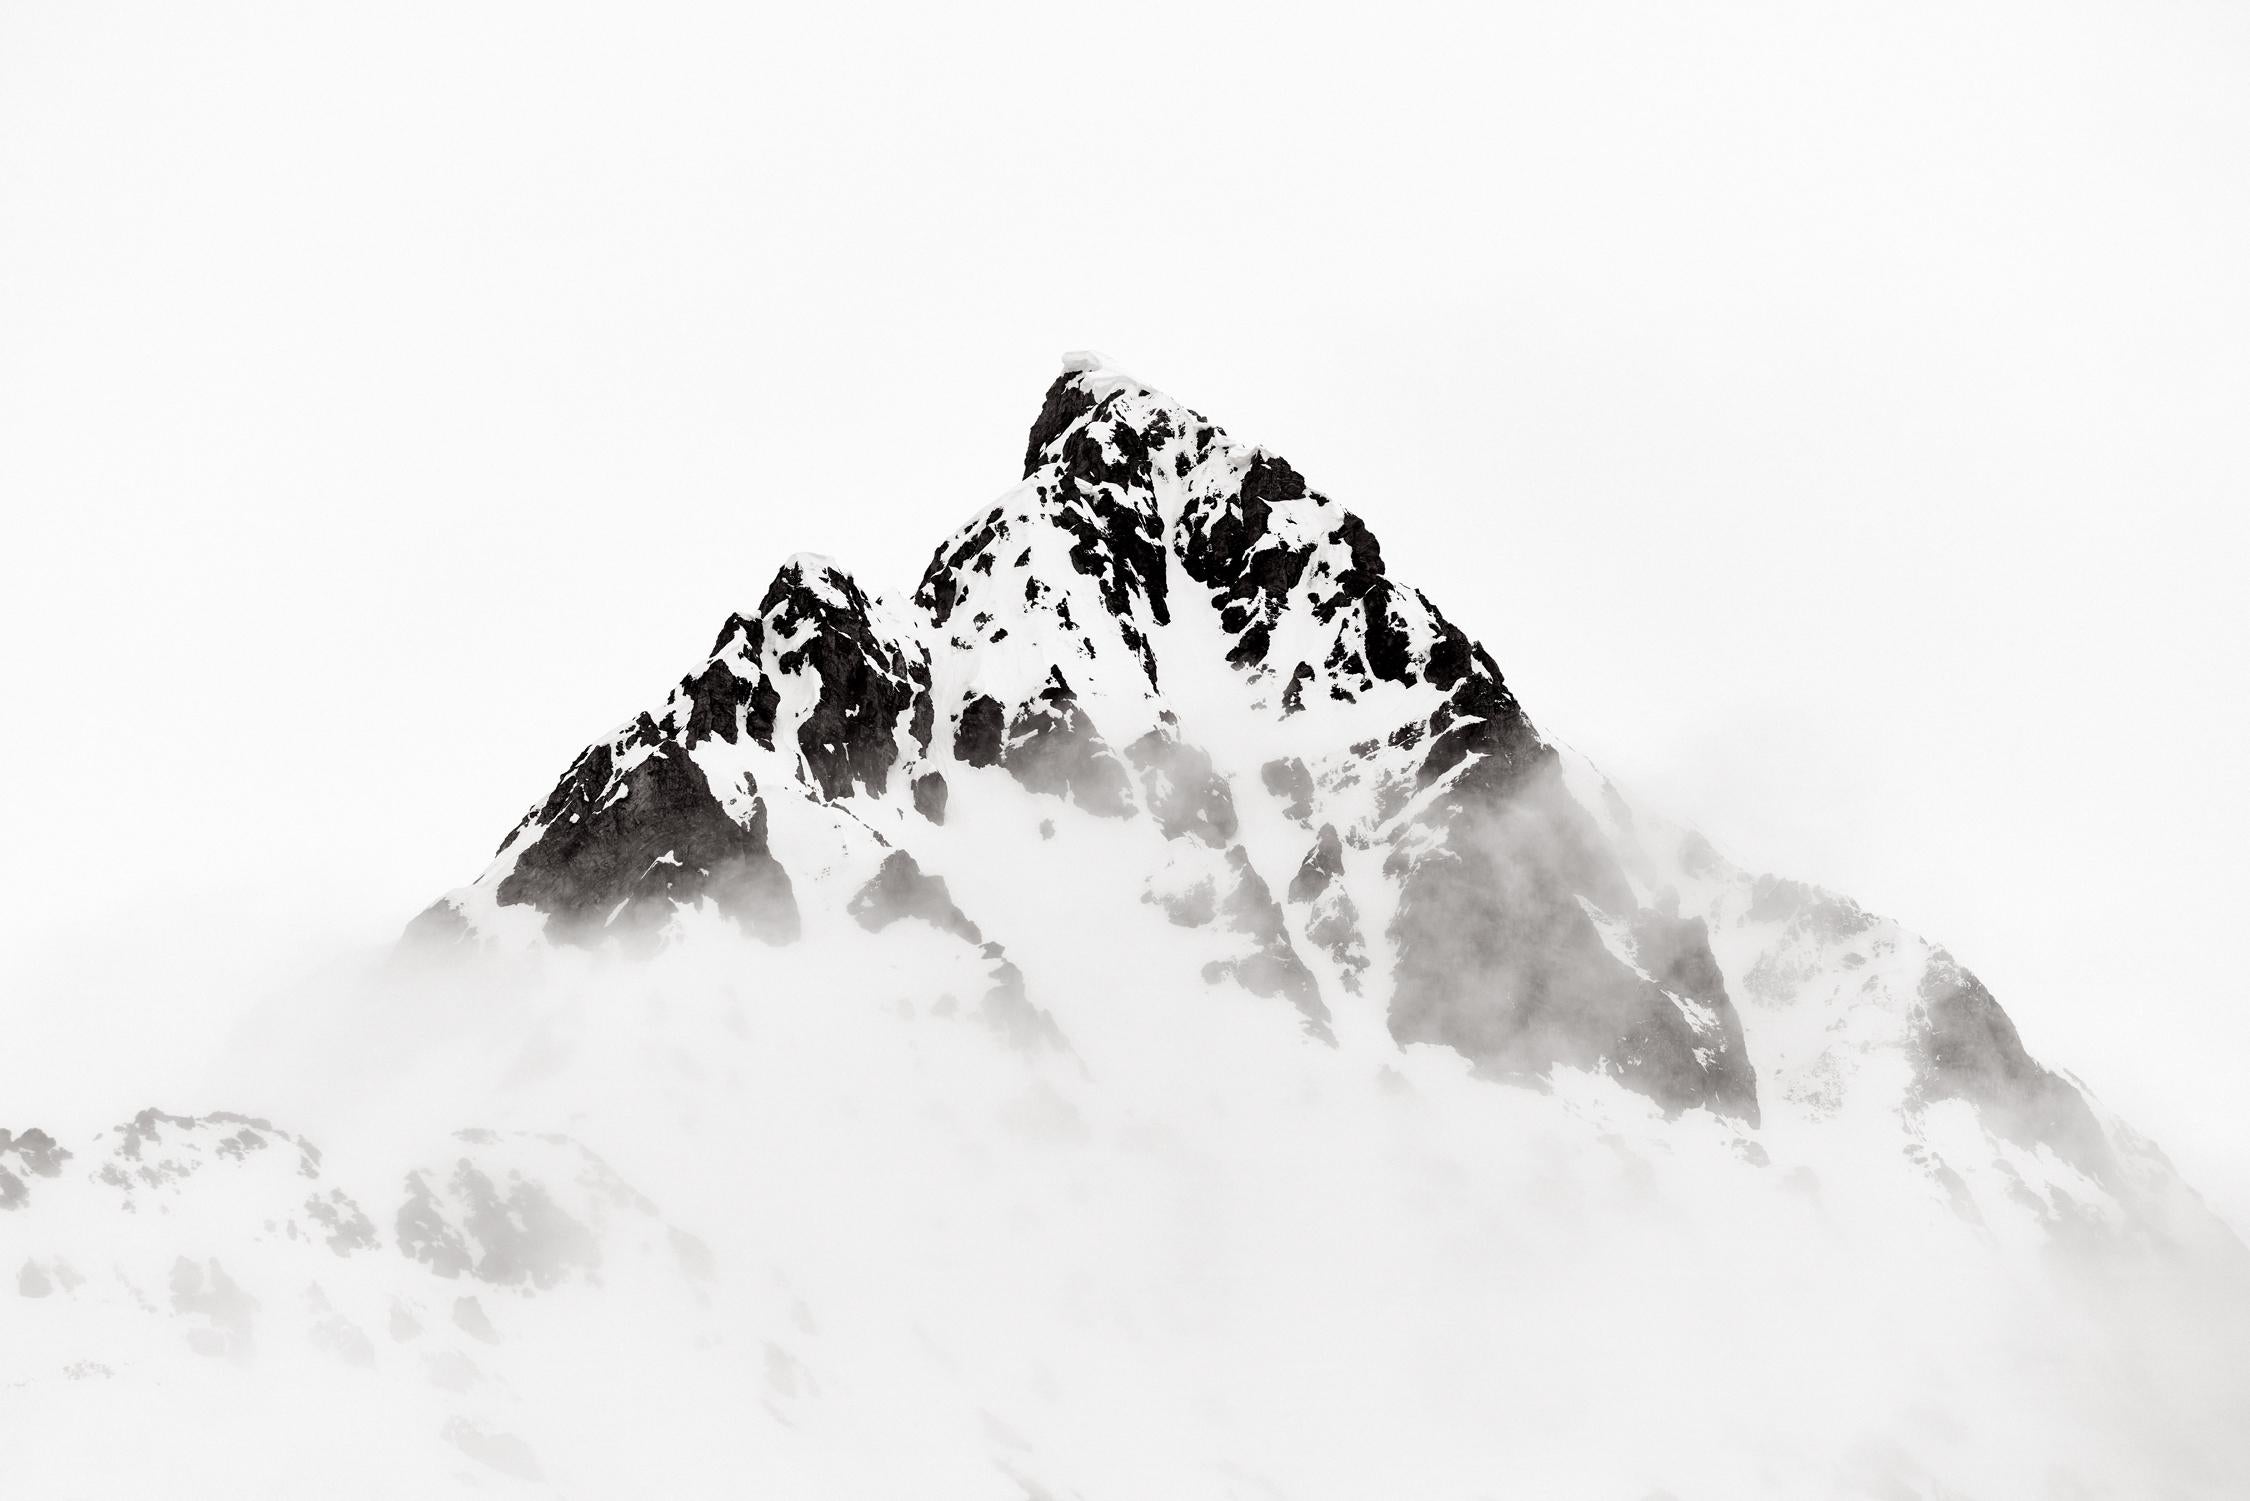 Drew Doggett Black and White Photograph – Minimale, abstrakte Landschaft der Arktis mit einem Schneeberg 